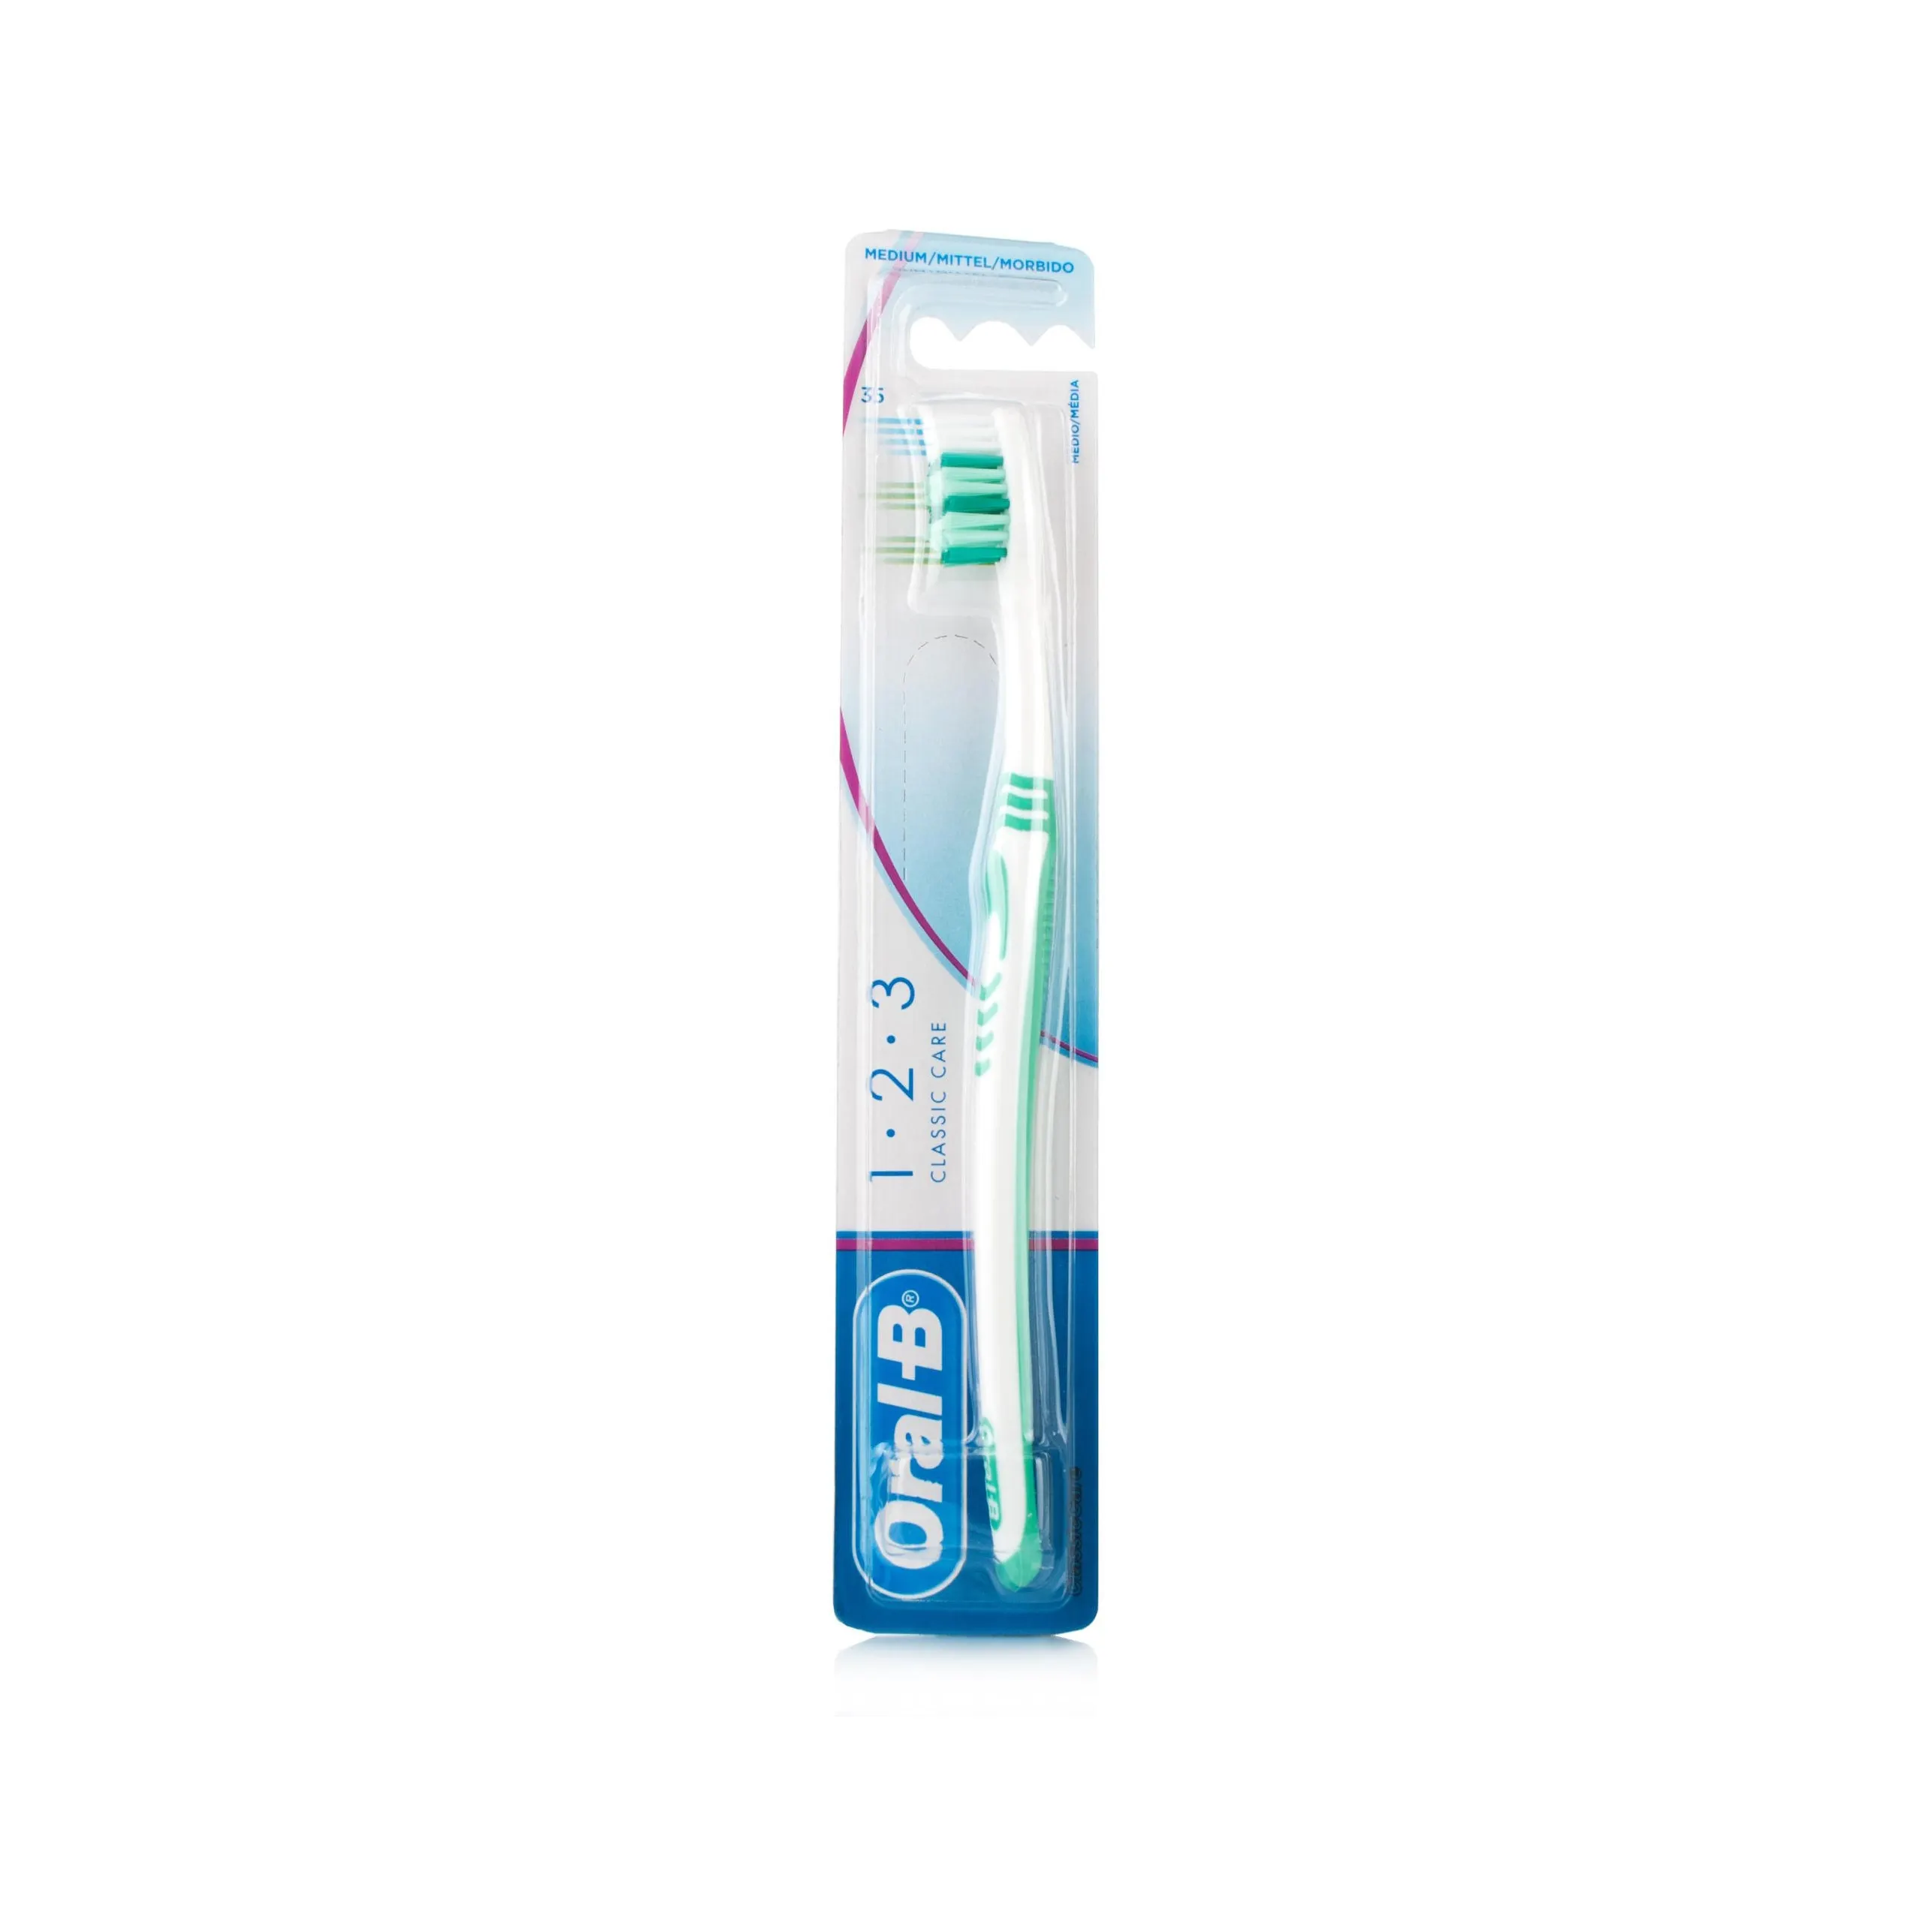 Braun oral-b 123 şarj edilebilir diş fırçası